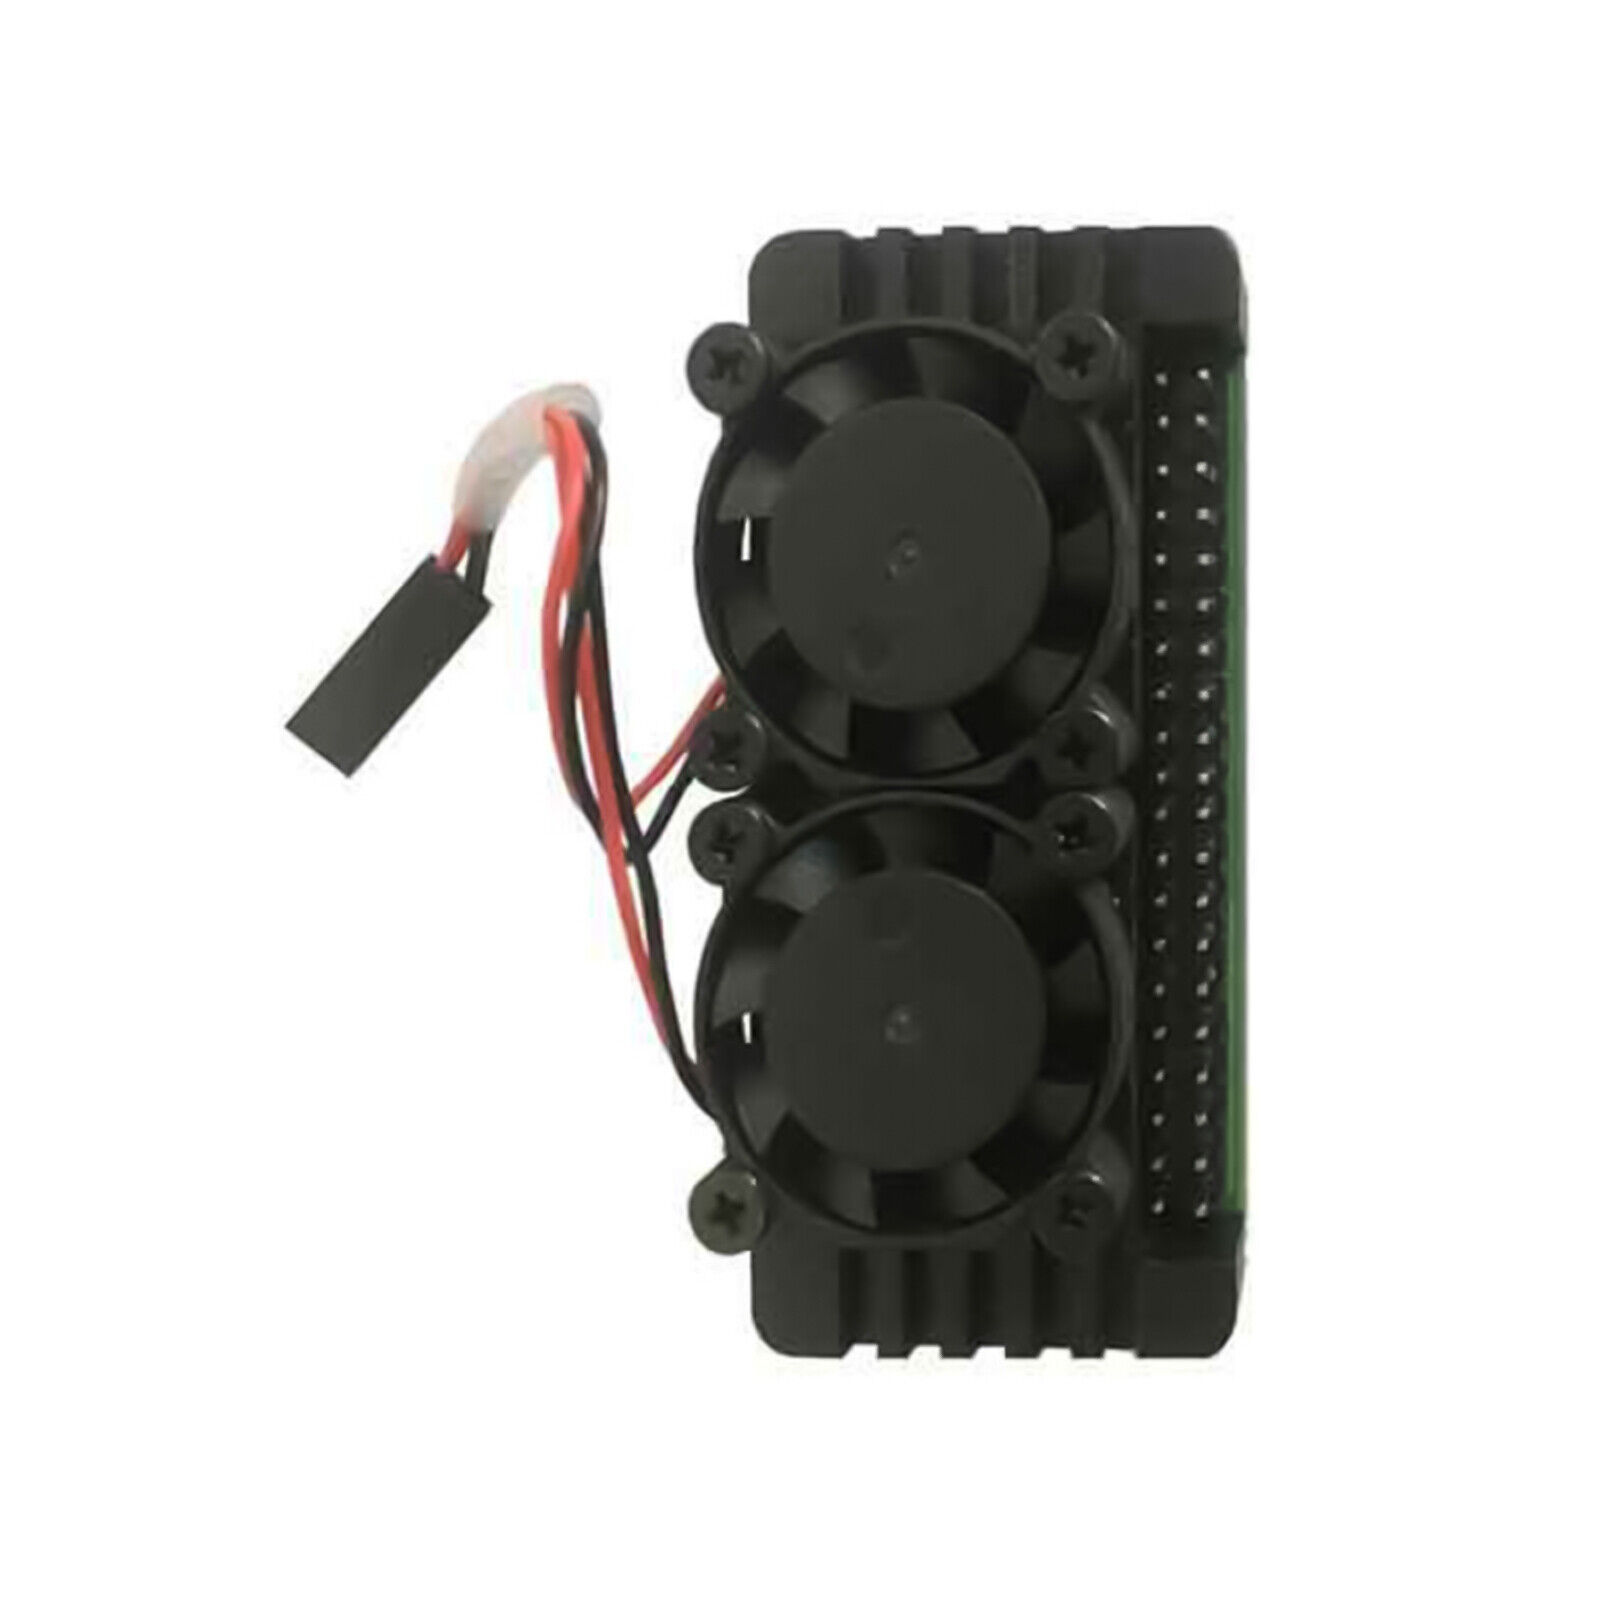 Dual Cooling Fan Aluminum Heatsink Case Shell Kit for Raspberry Pi Zero 2W